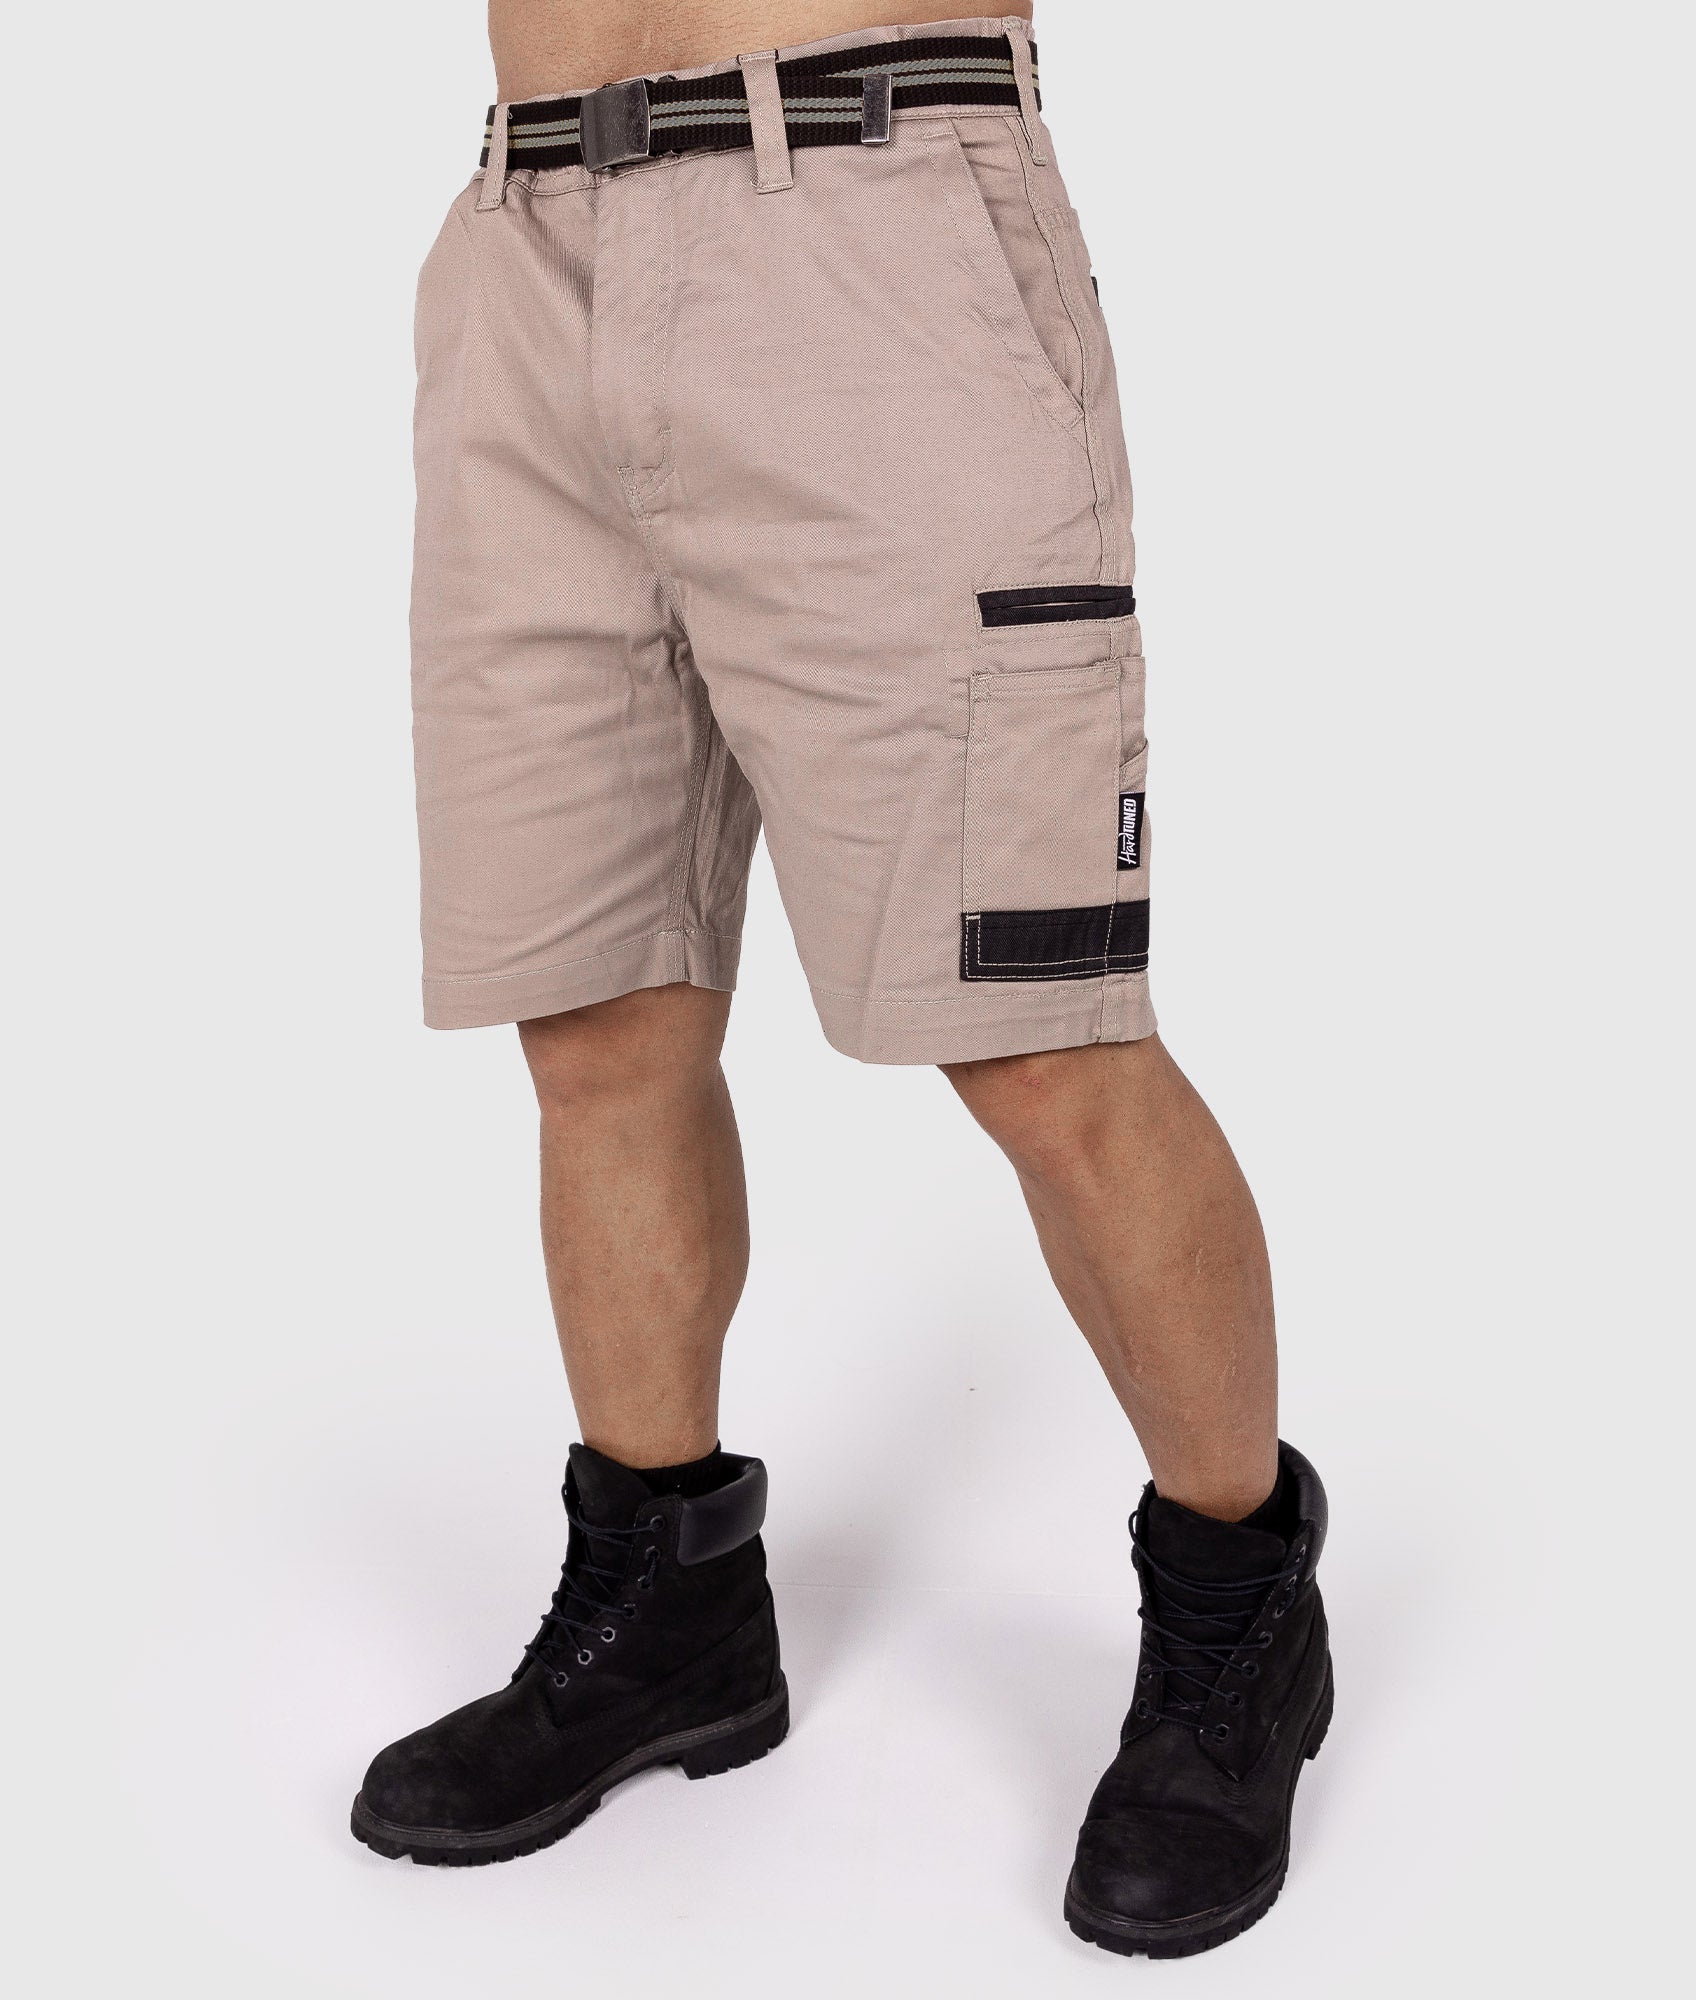 HardTuned Pitstop Cargo Shorts - Tan - Hardtuned